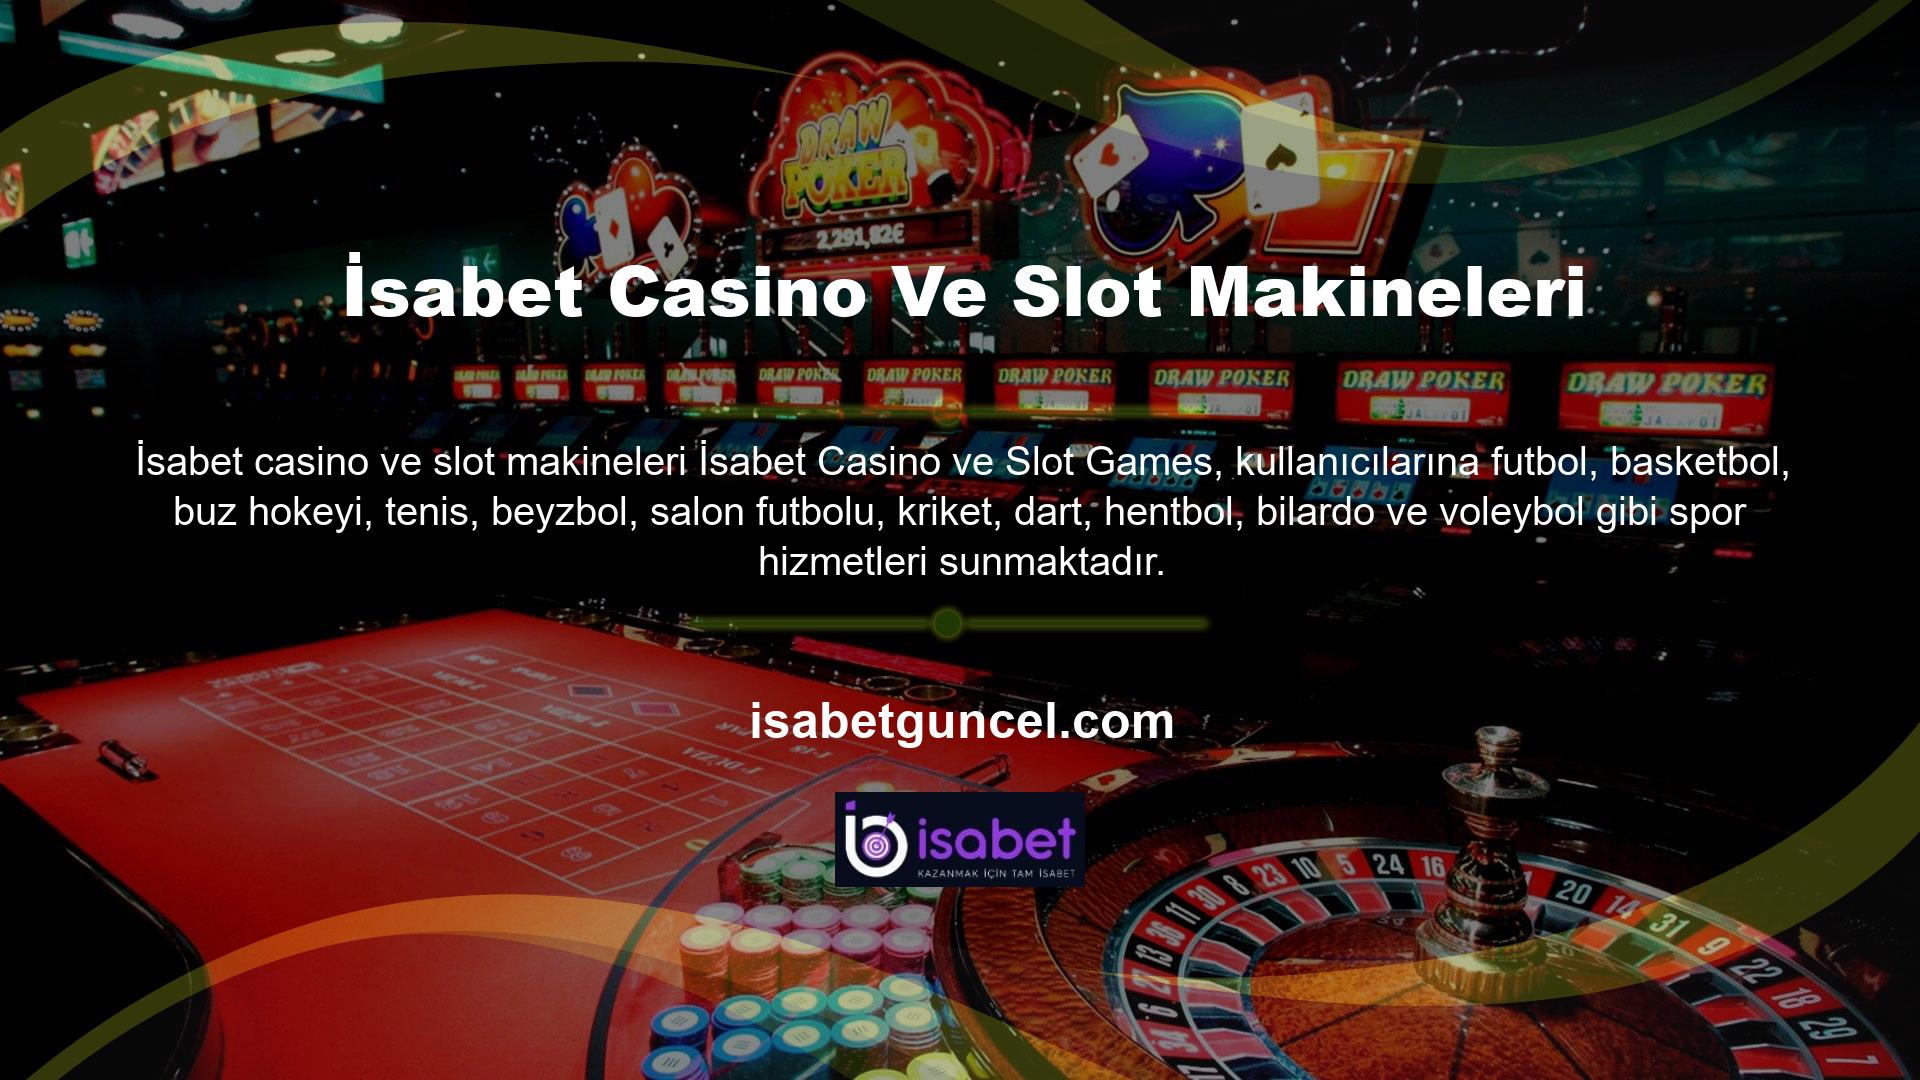 Ayrıca önde gelen oyun sağlayıcılarından canlı casino hizmetleri sunuyoruz